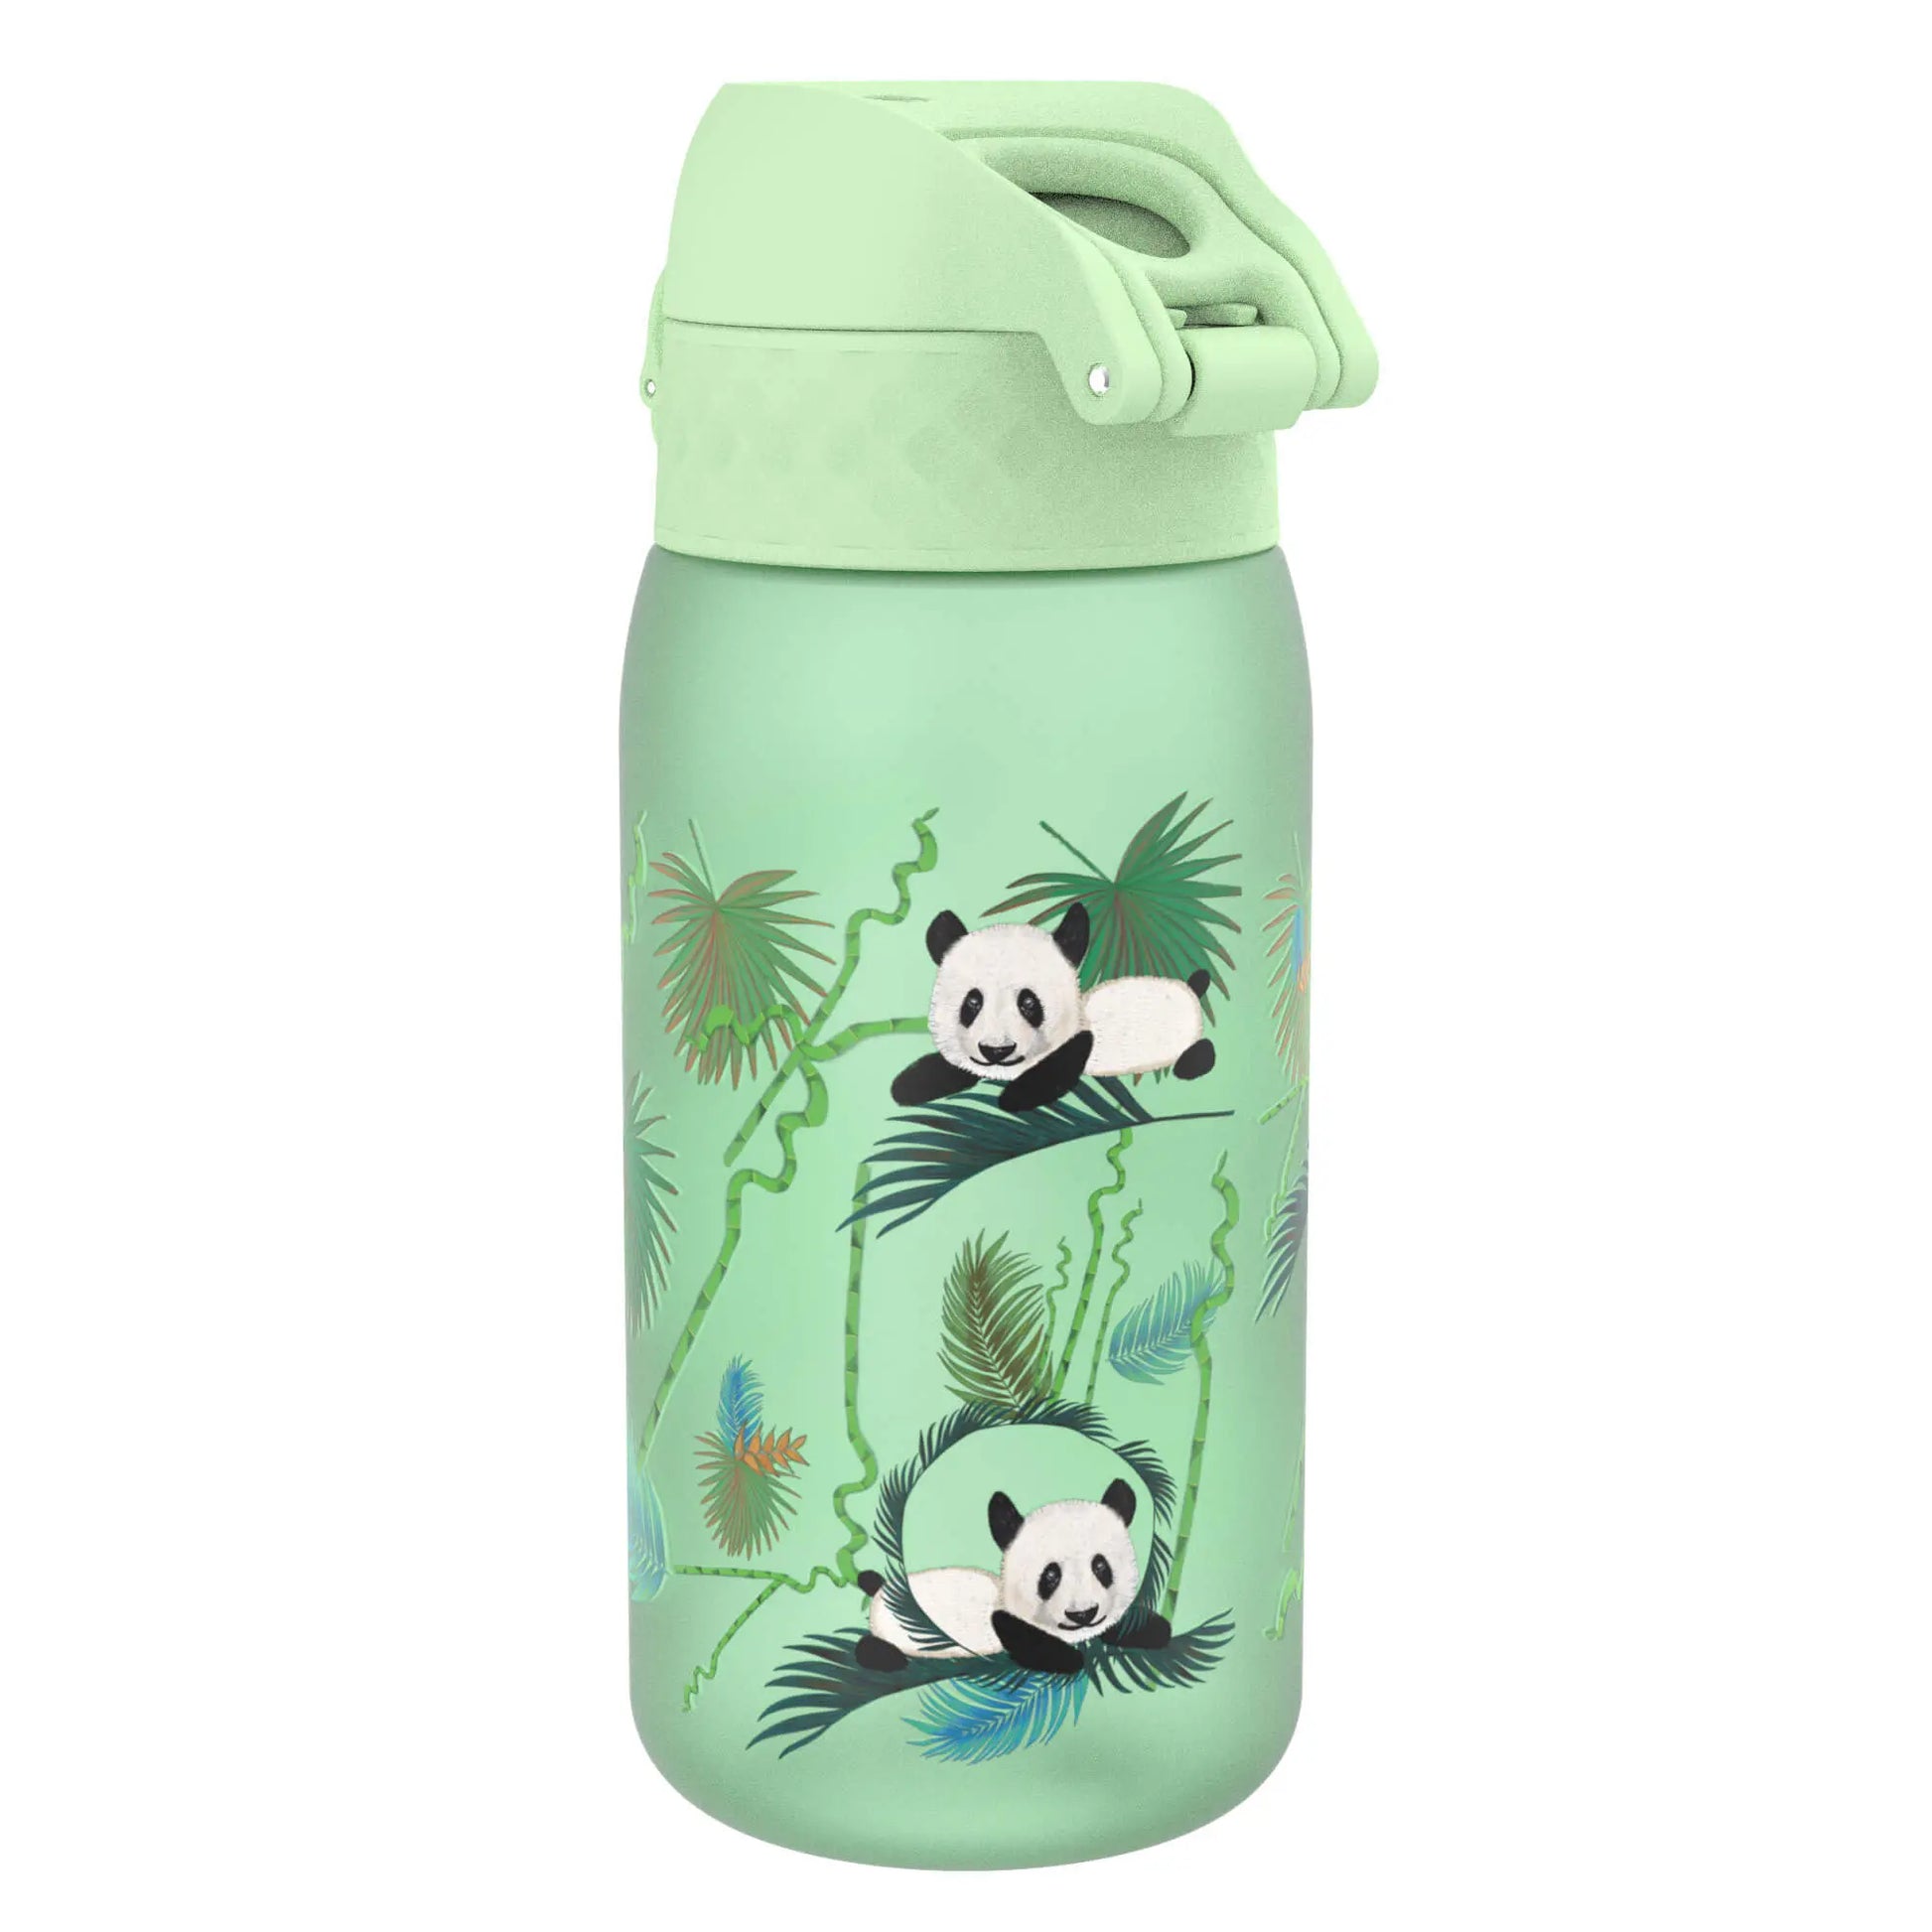 https://www.ion8.co.uk/cdn/shop/files/Leak-Proof-Kids_-Water-Bottle_-Recyclon_-Pandas_-350ml-_12oz_-Ion8-54663270.jpg?v=1703121011&width=1946